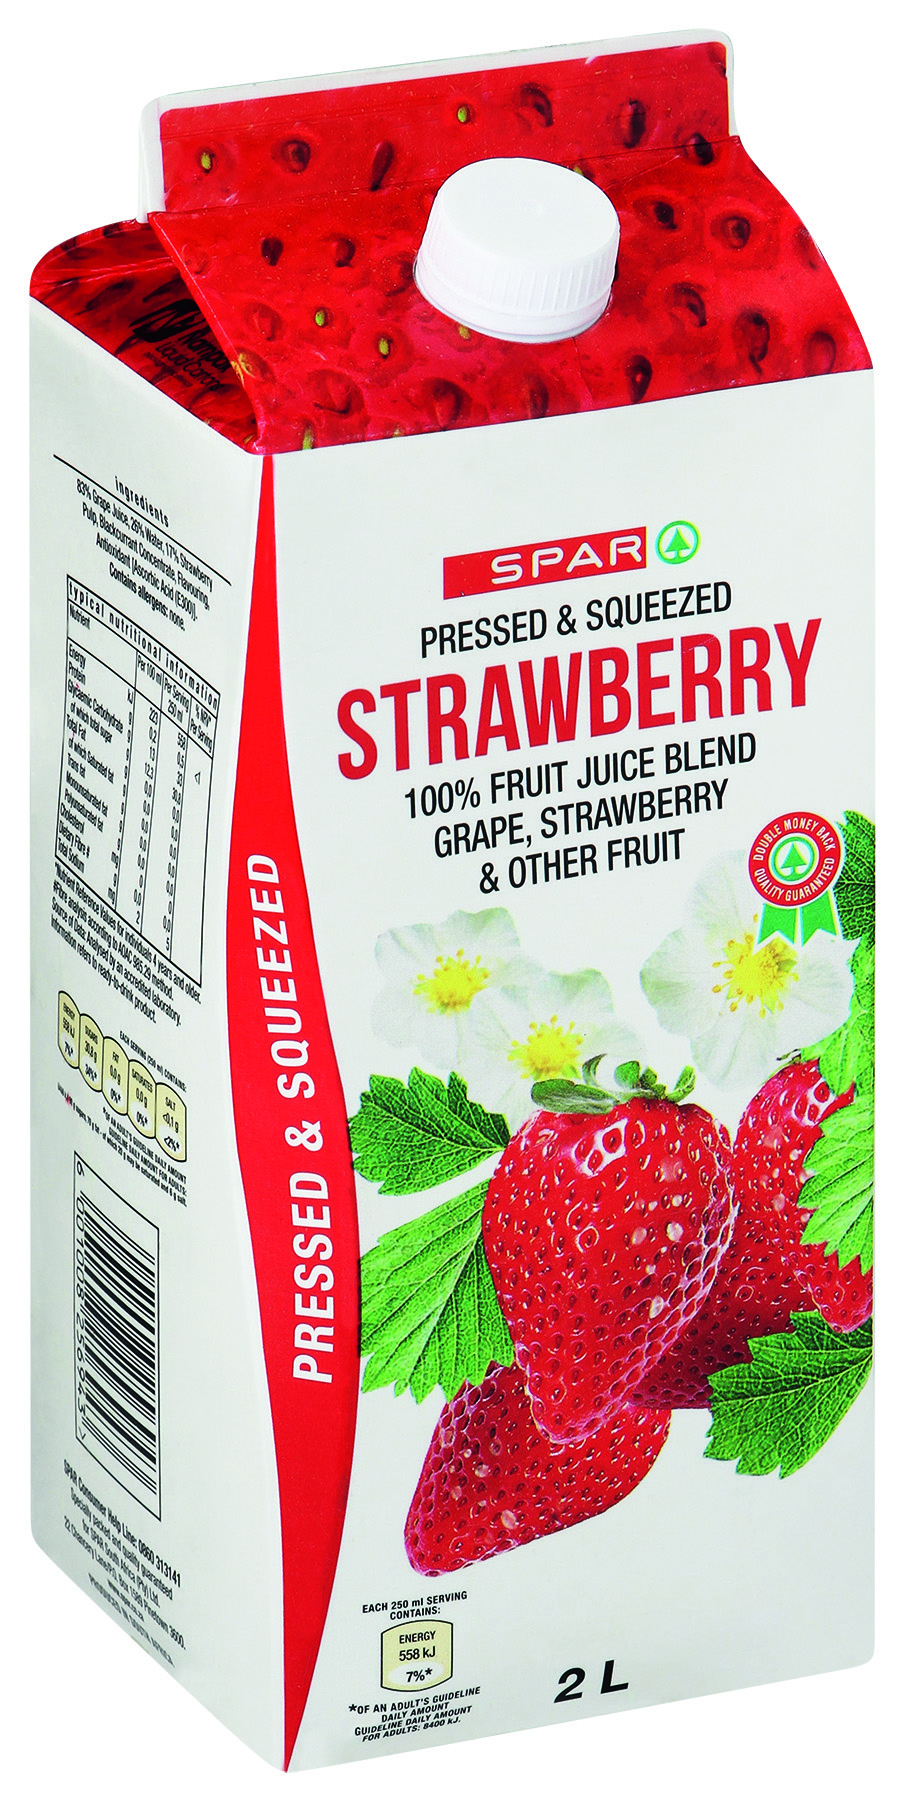 100% fruit juice - strawberry